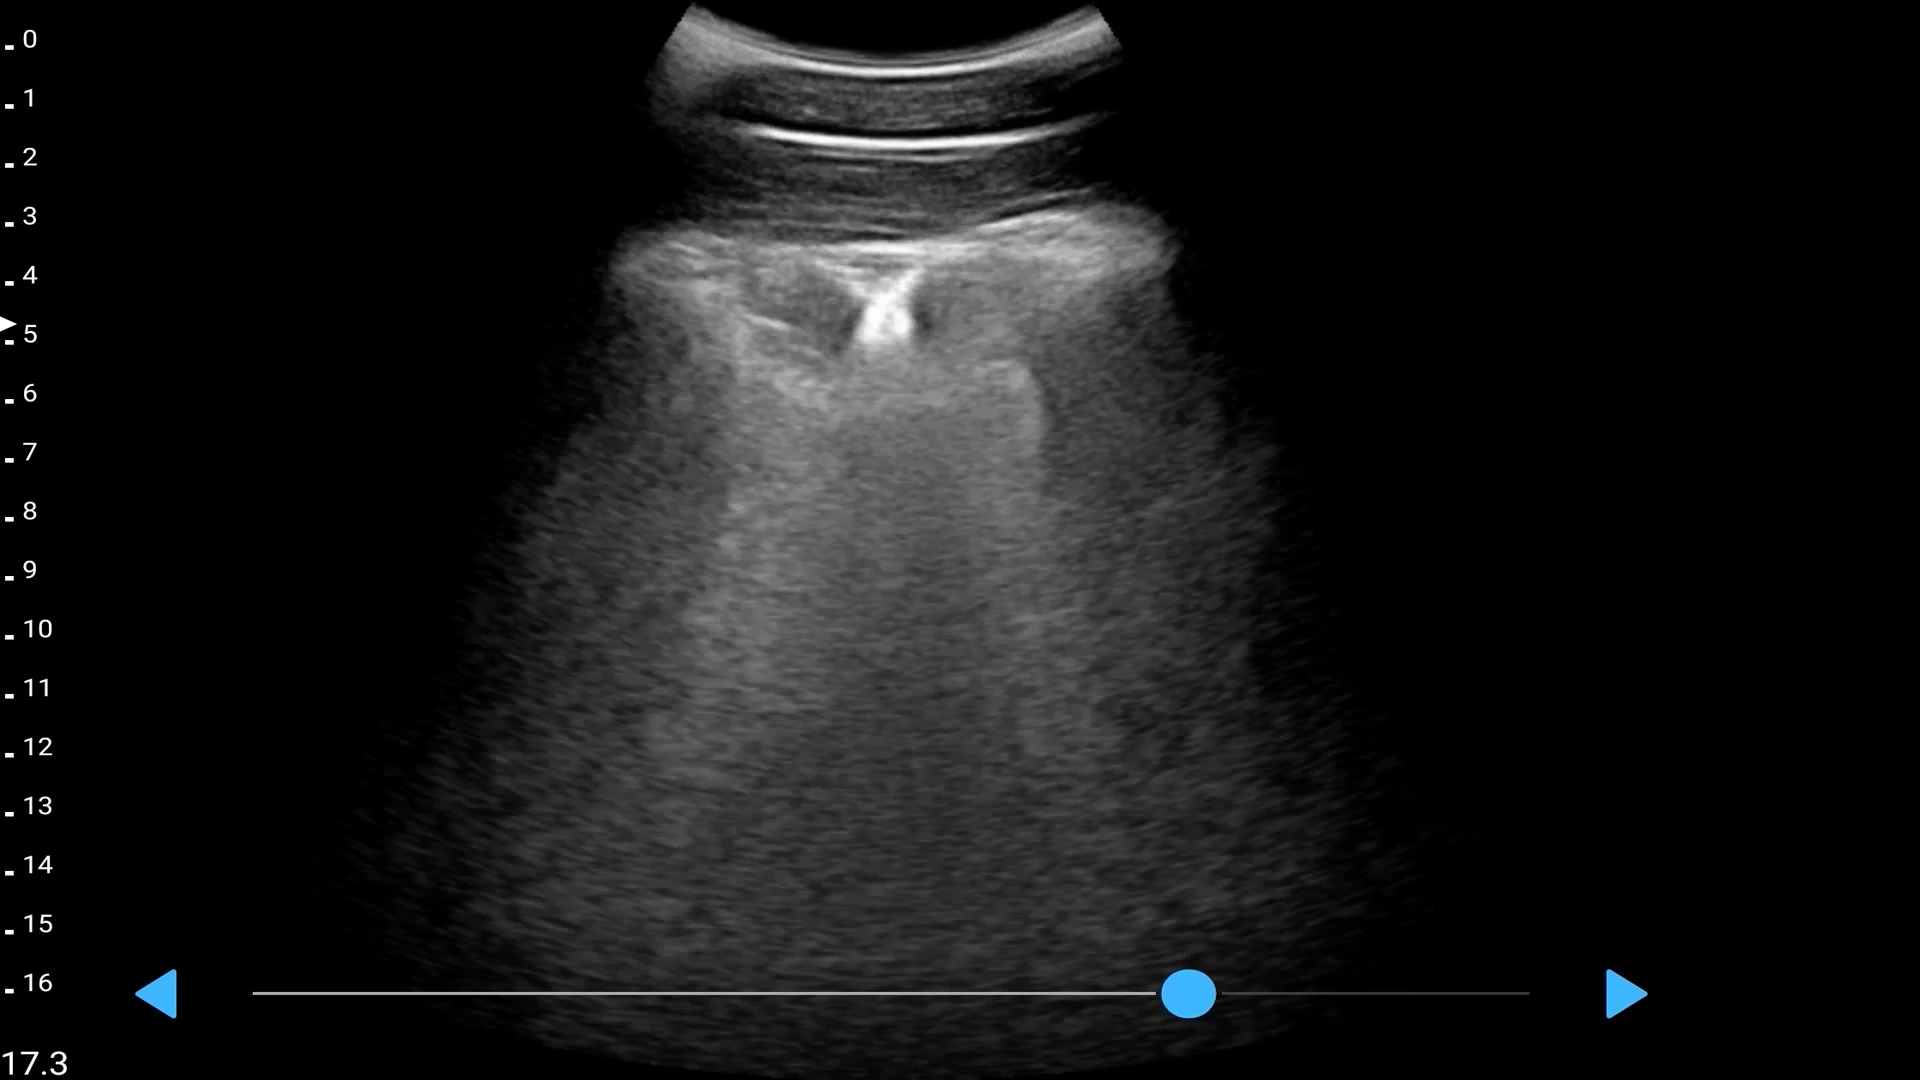 LU800 Swine_Porcine lard measurement ultrasound image